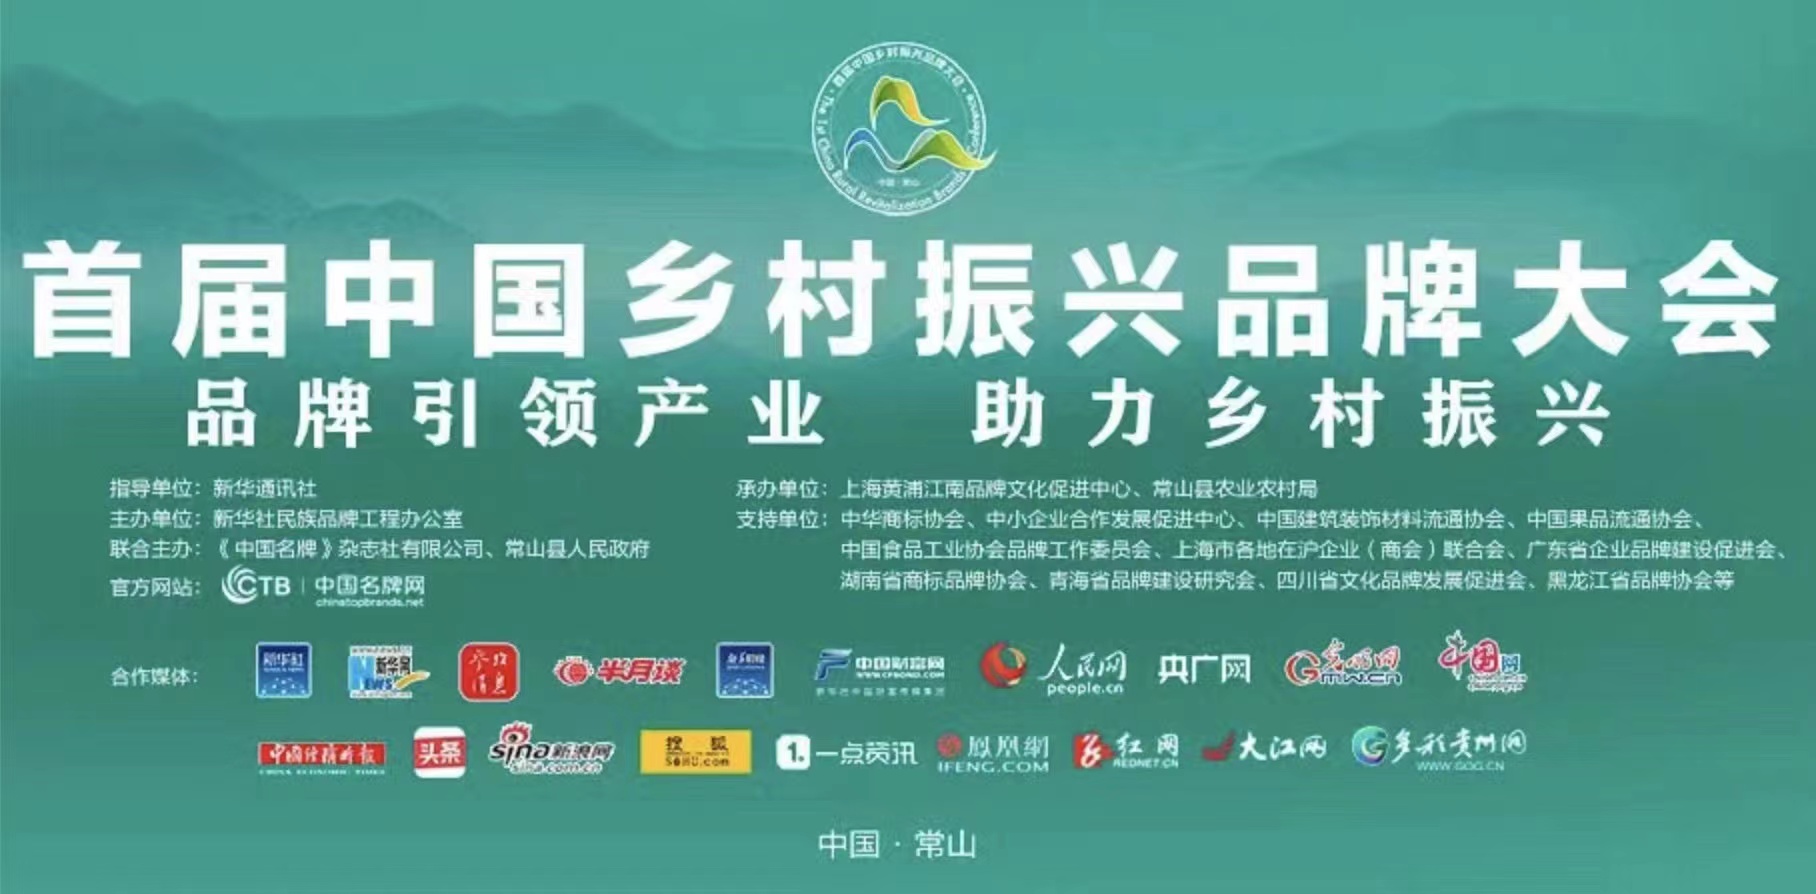 四川省文化品牌发展促进会参与首届中国乡村振兴品牌大会